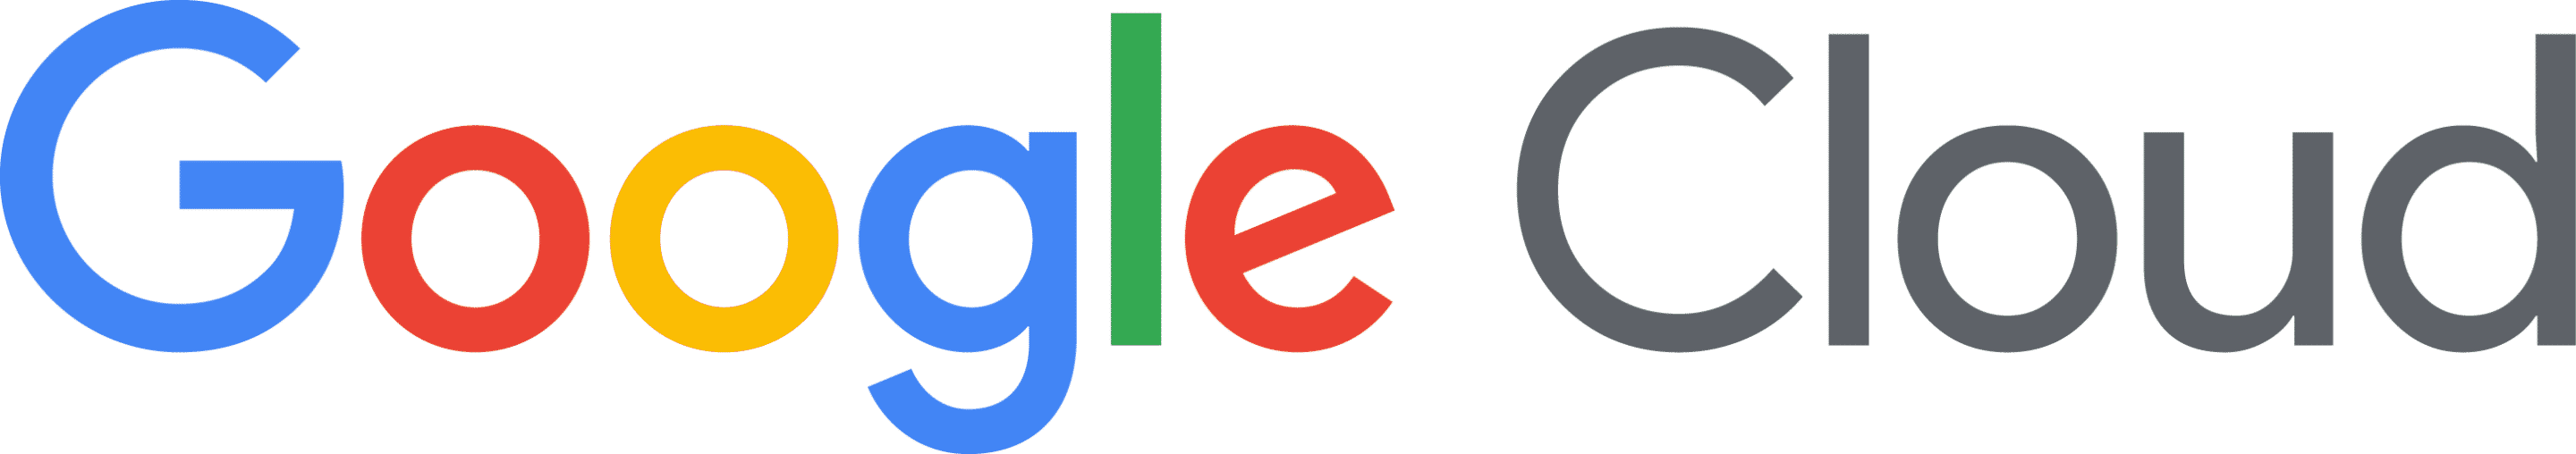 Google Cloud Logo Schriftzug